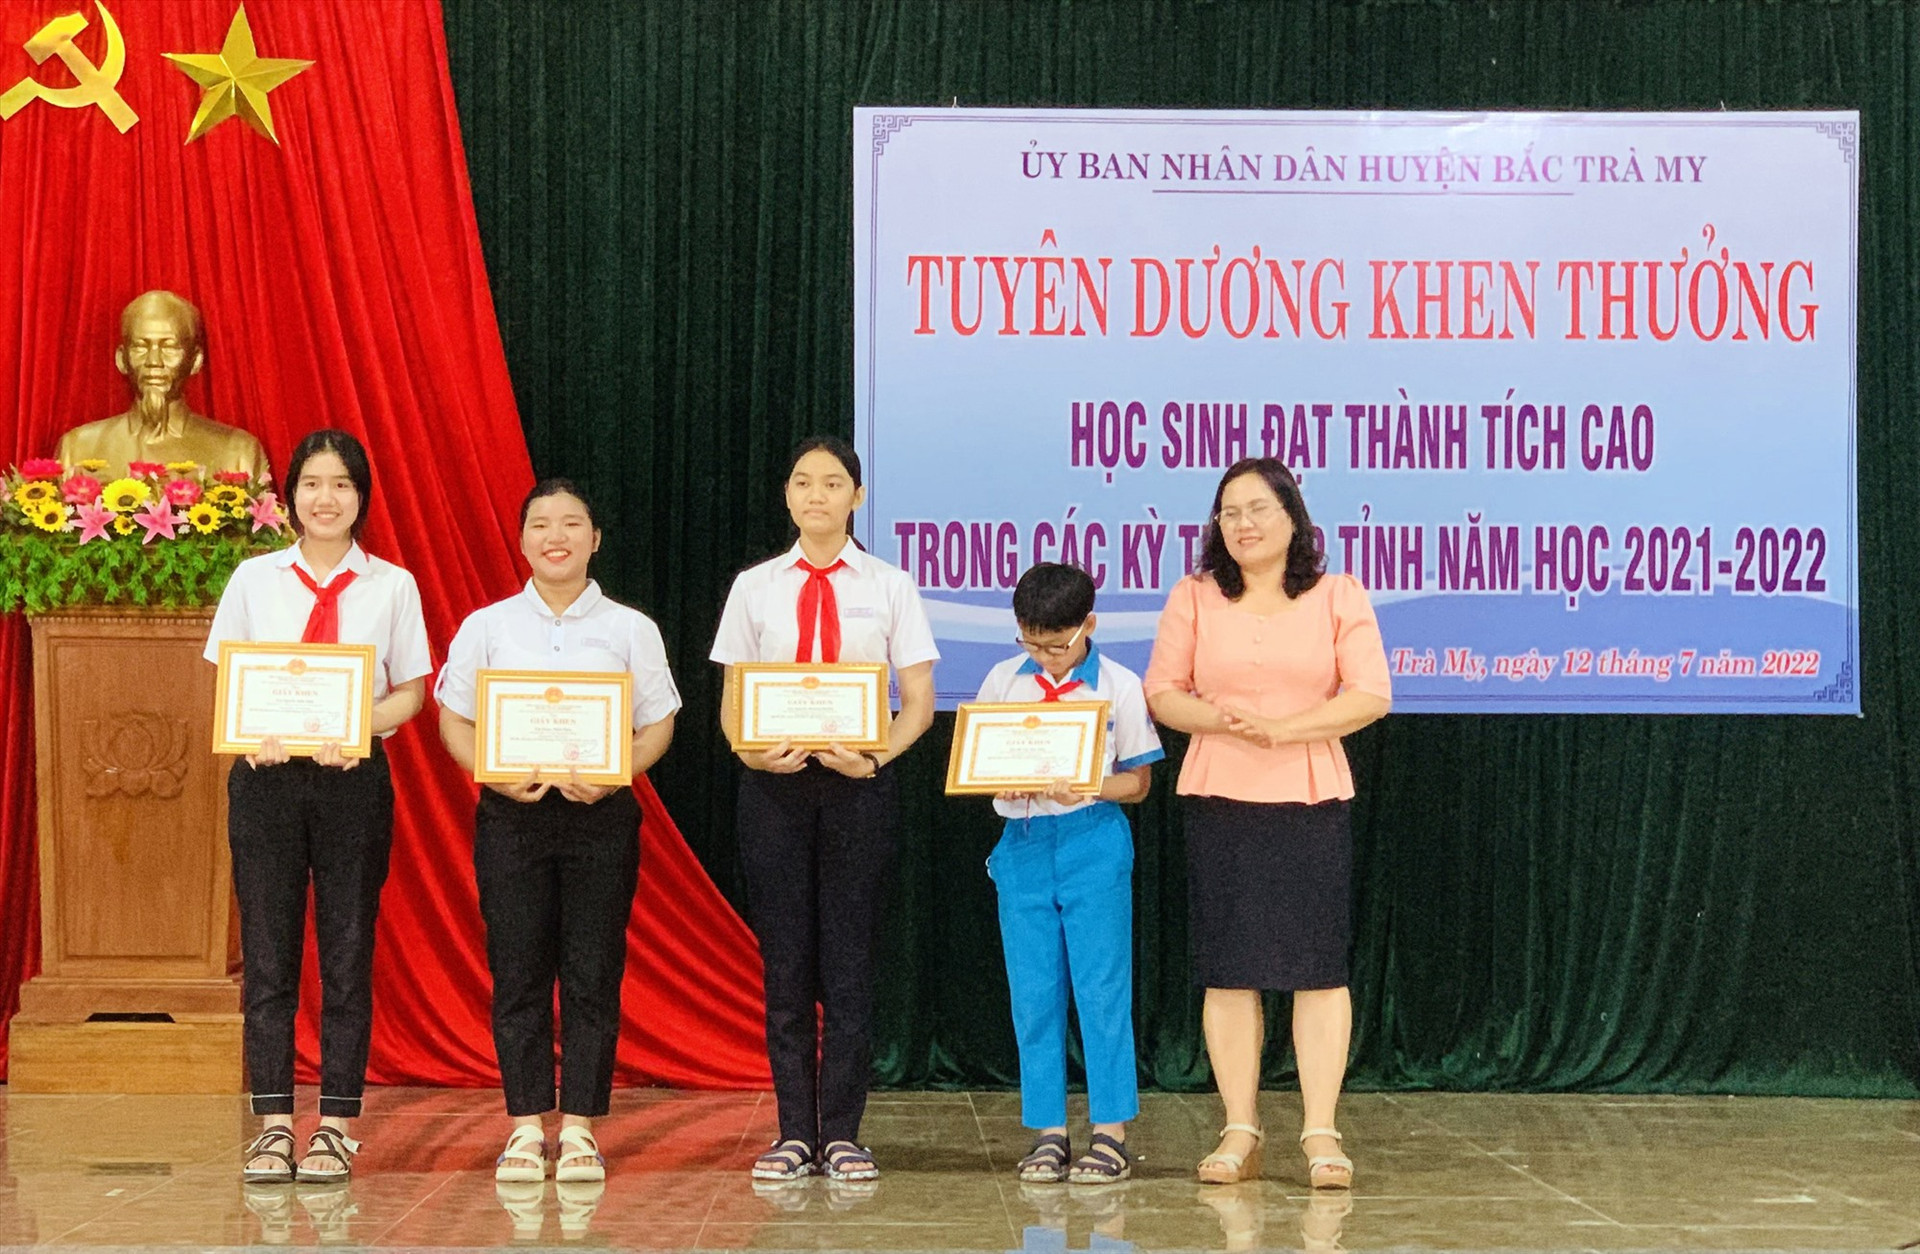 Bà Nguyễn Thị Tuyết Thanh – Bí thư Huyện ủy Bắc Trà My trao thưởng cho các em học sinh đạt giải cao tại các kỳ thi.